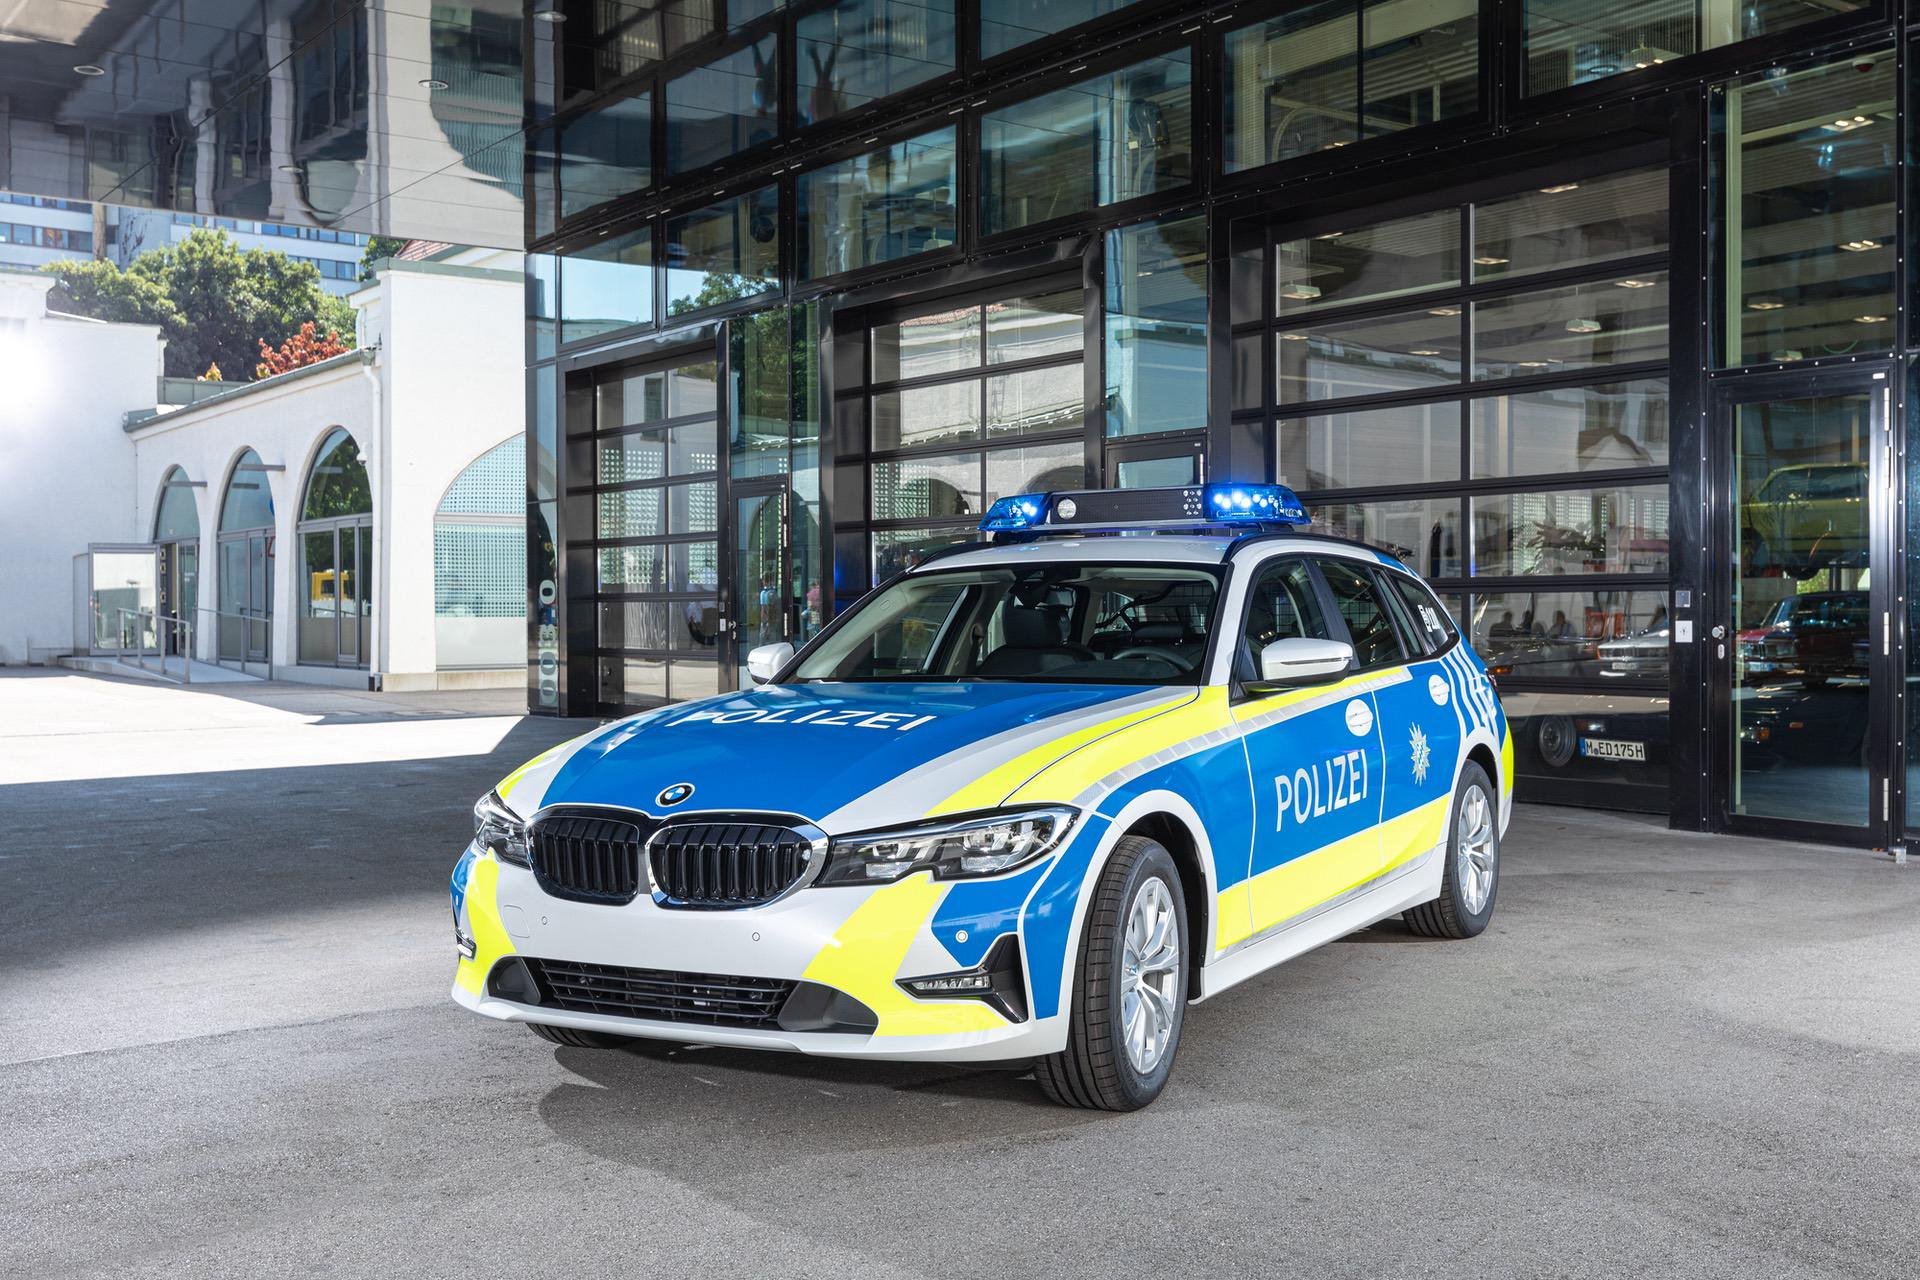  Poliţia nu mai vrea Dacii şi VW-uri, dar cumpără 600 de BMW-uri